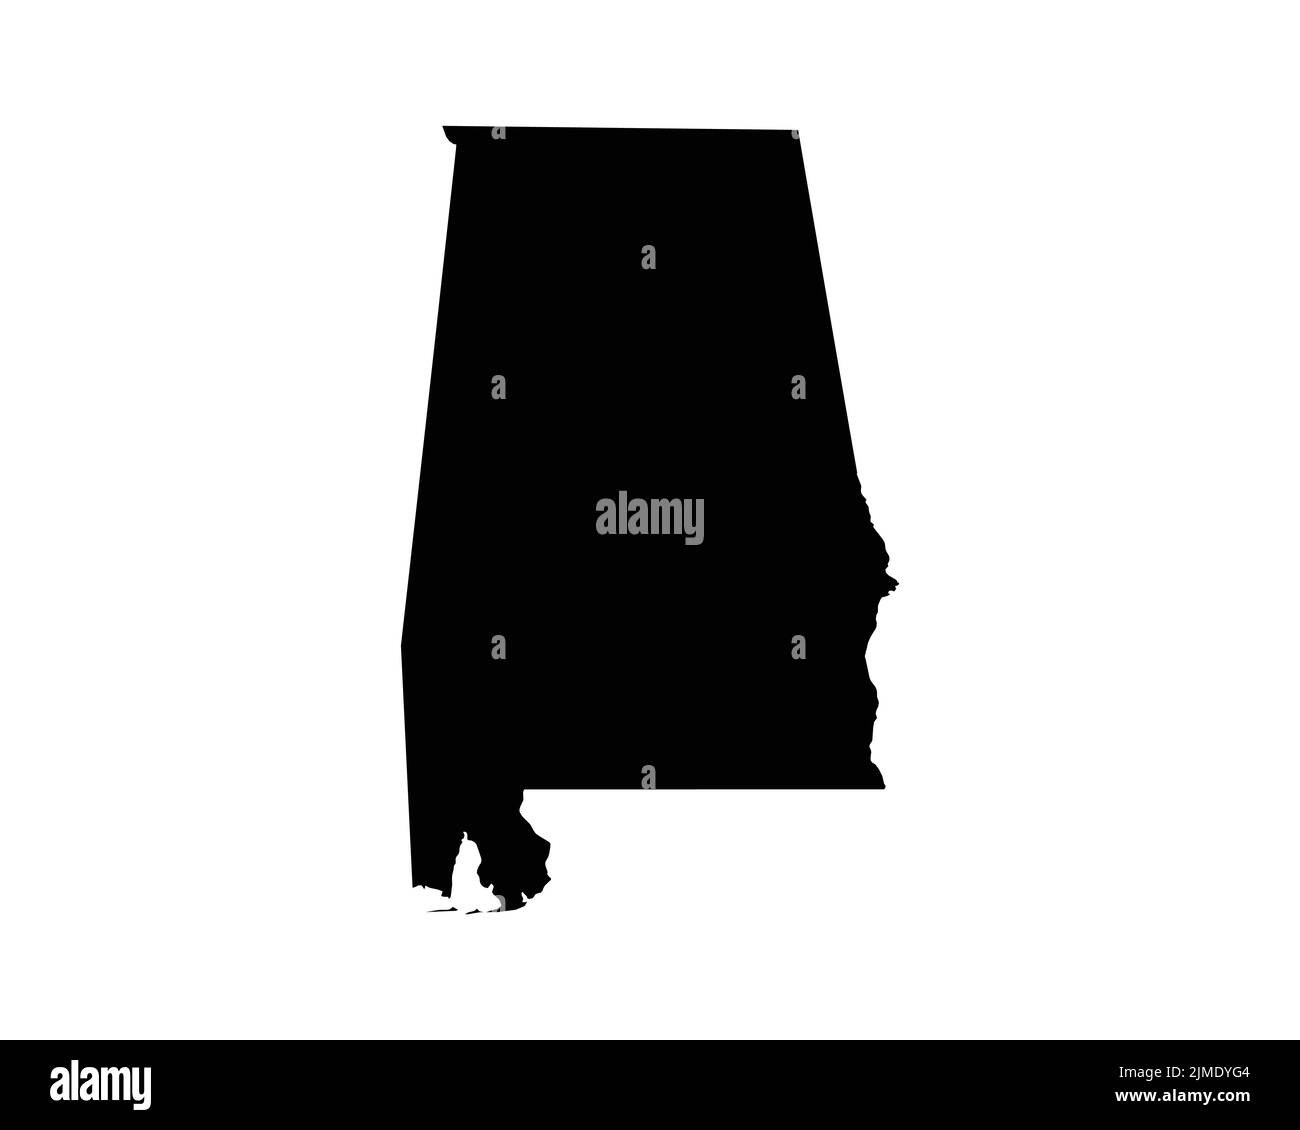 US-Karte von Alabama. AL USA State Map. Schwarz-Weiß Alabamian Staatsgrenze Grenzlinie Umriss Geographie Territorium Form Vektor Illustration EPS Clipa Stock Vektor